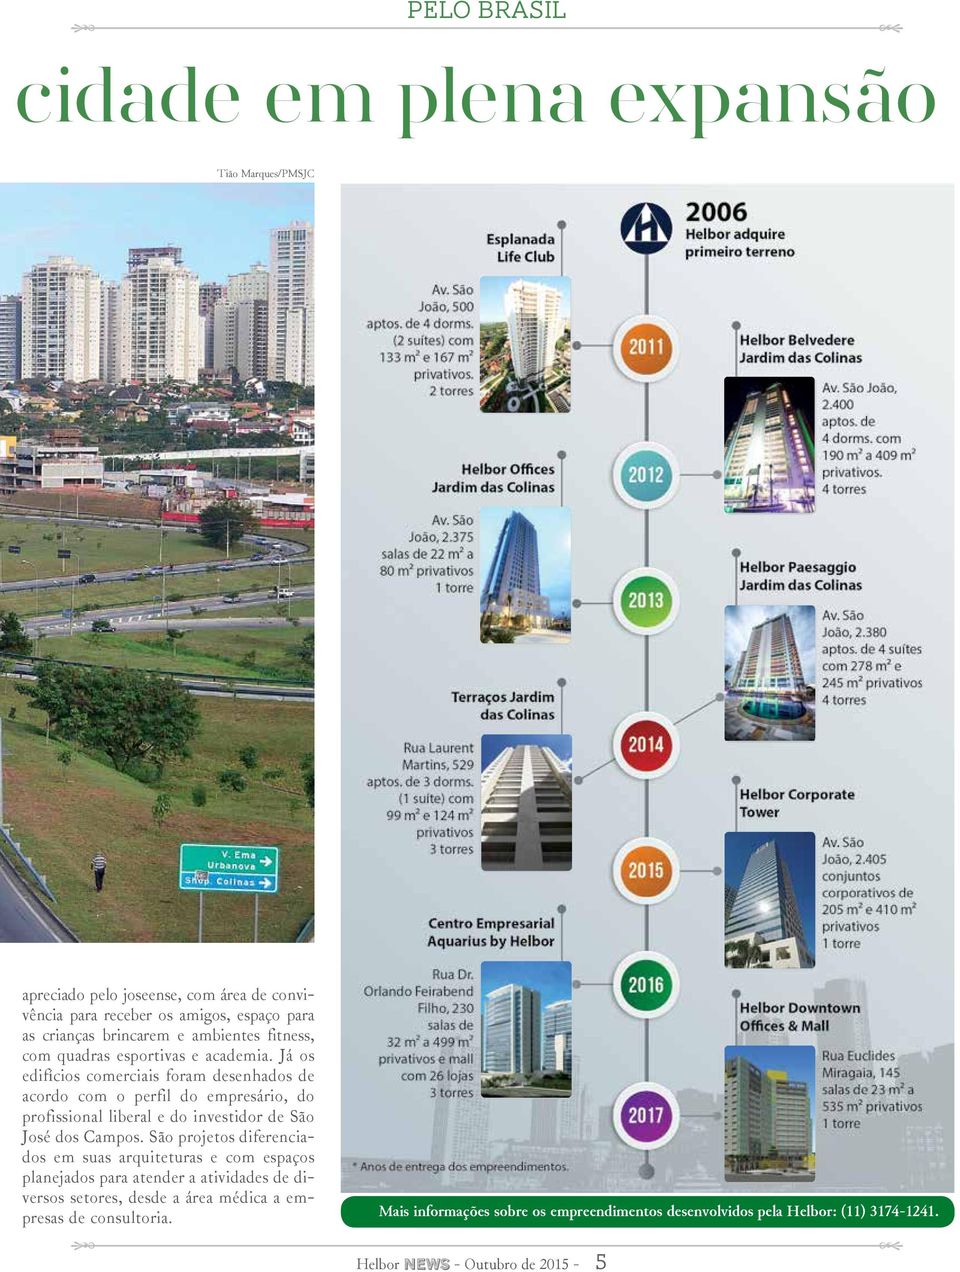 Já os edifícios comerciais foram desenhados de acordo com o perfil do empresário, do profissional liberal e do investidor de São José dos Campos.